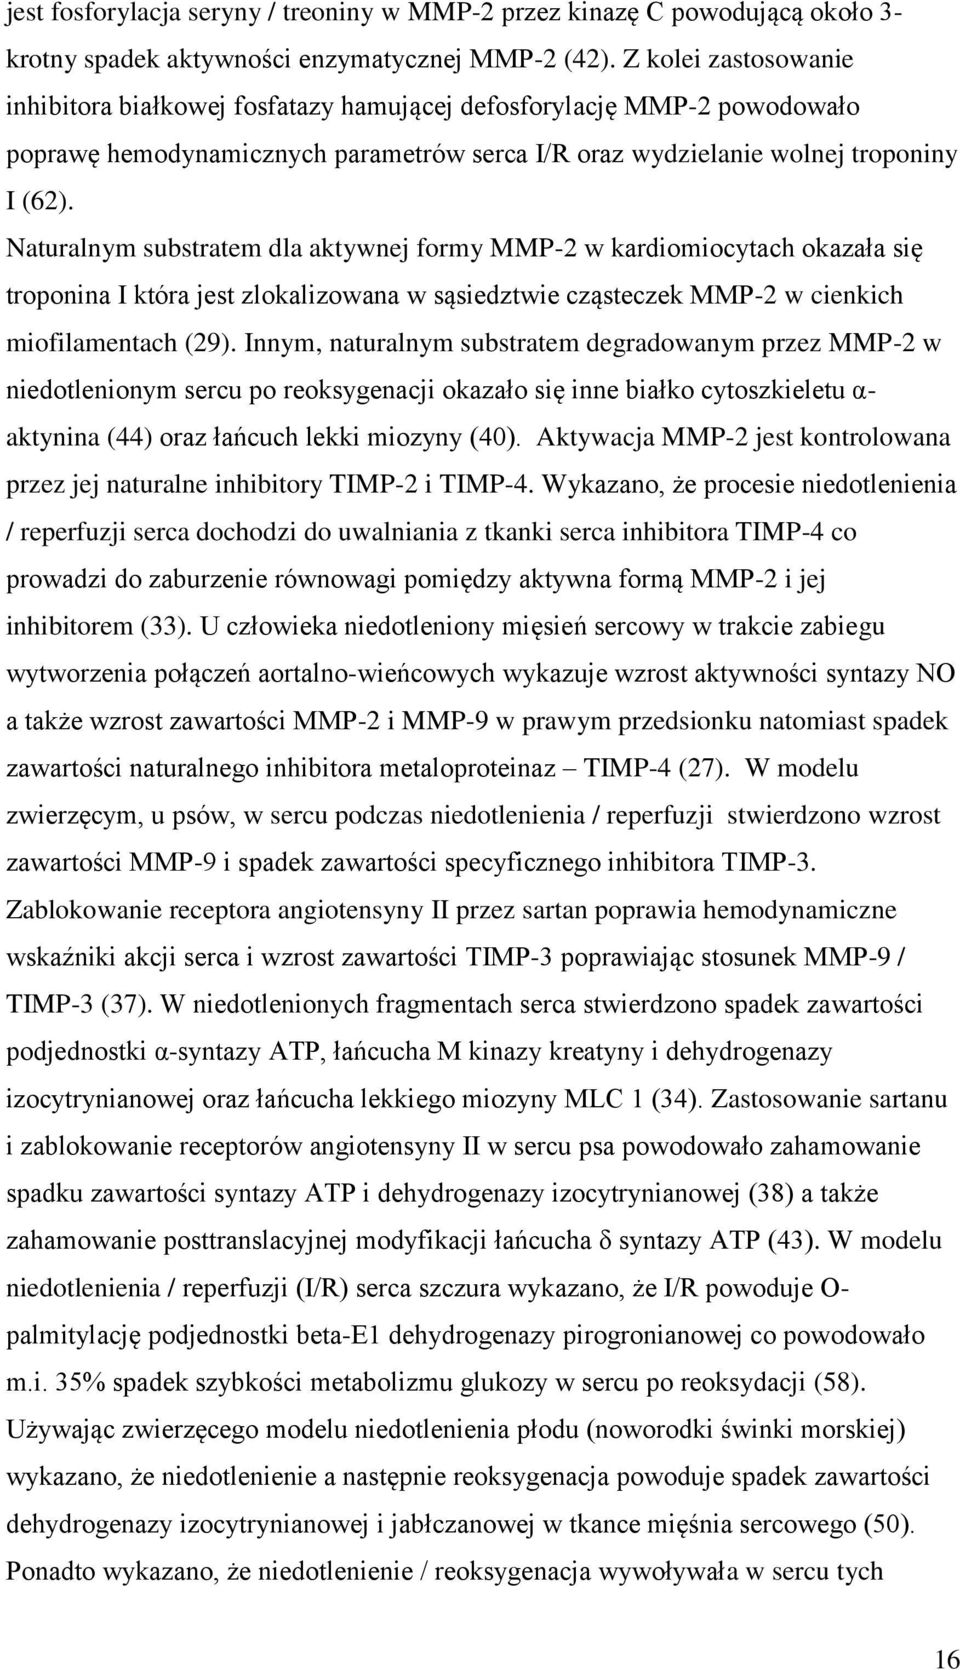 Naturalnym substratem dla aktywnej formy MMP-2 w kardiomiocytach okazała się troponina I która jest zlokalizowana w sąsiedztwie cząsteczek MMP-2 w cienkich miofilamentach (29).